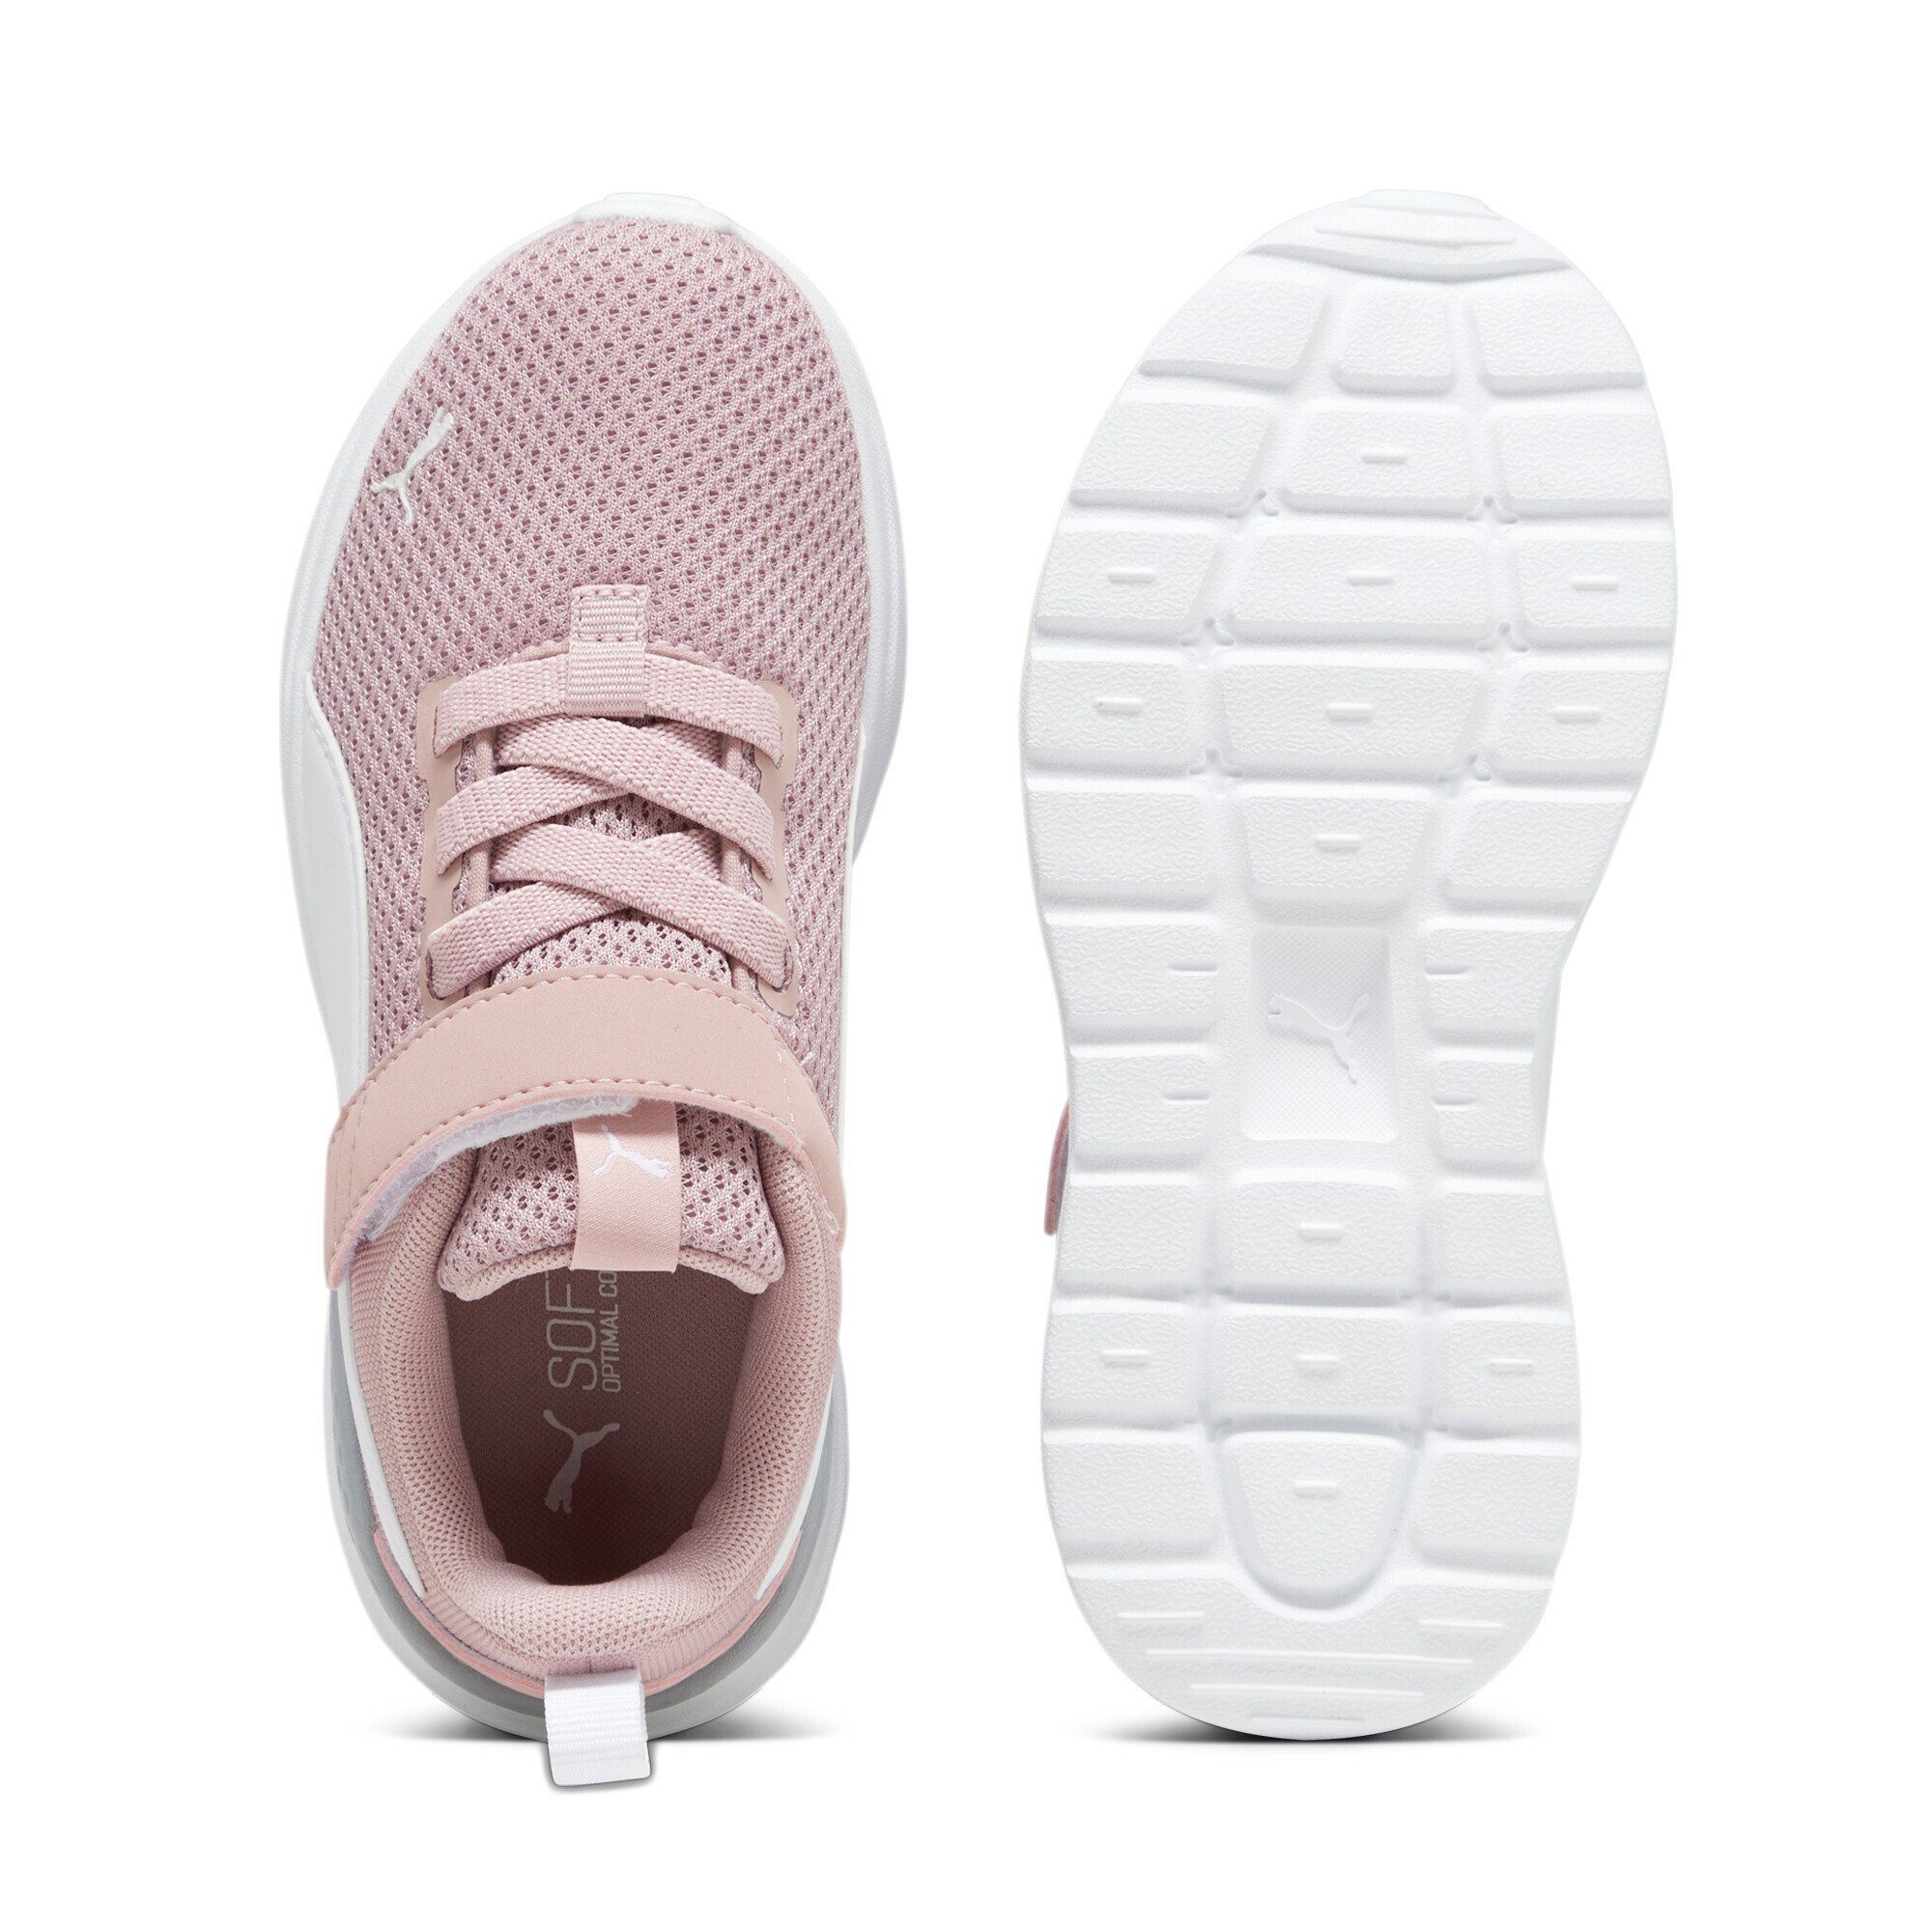 PUMA Anzarun Sneaker Kids Smoothie Lite Pink White Peach Laufschuh